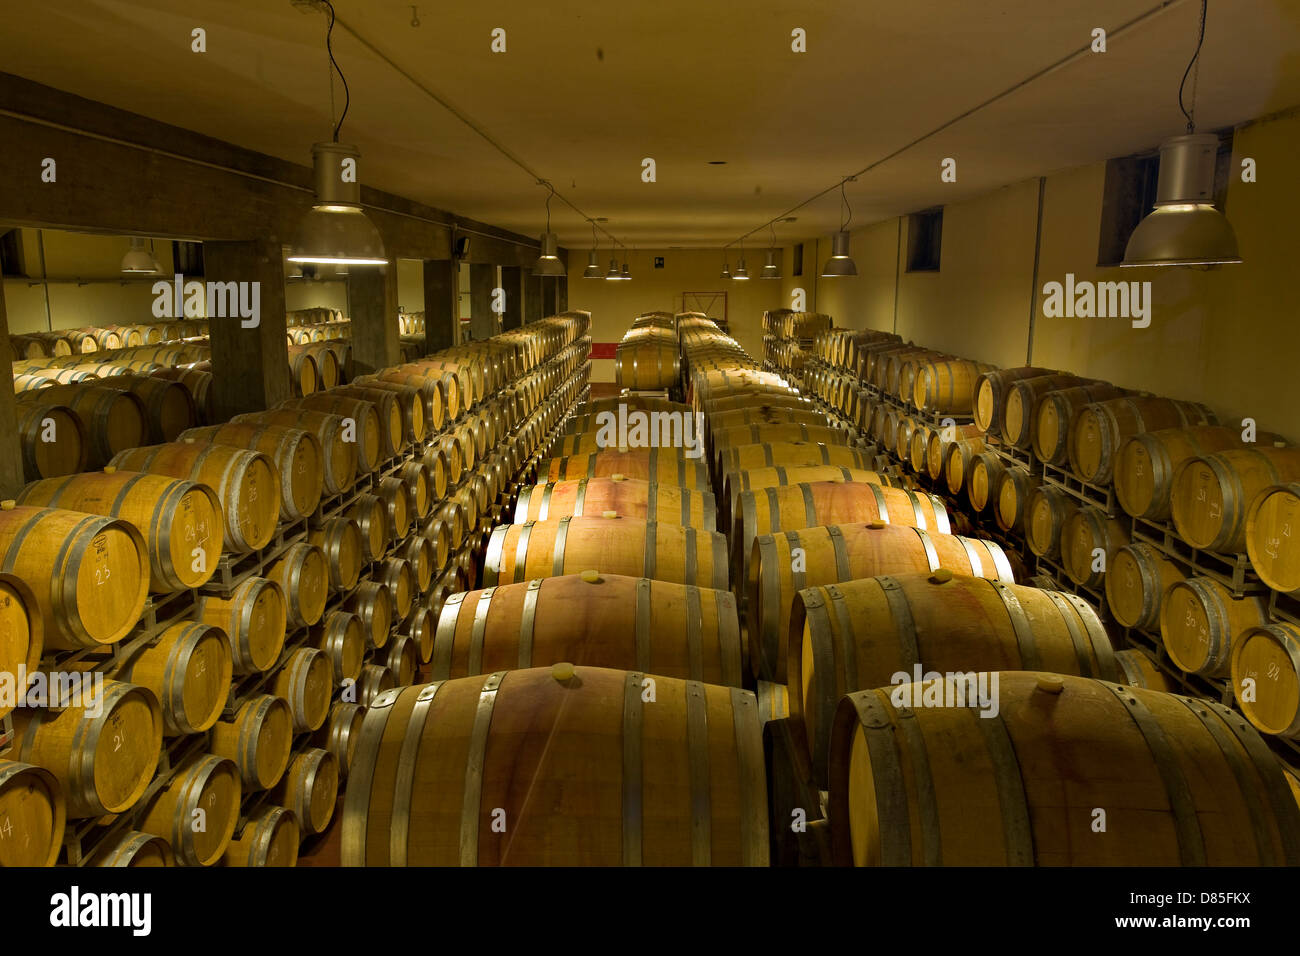 Italy Lombardy Valtellina Chiuro Nino Negri vinery callar Stock Photo